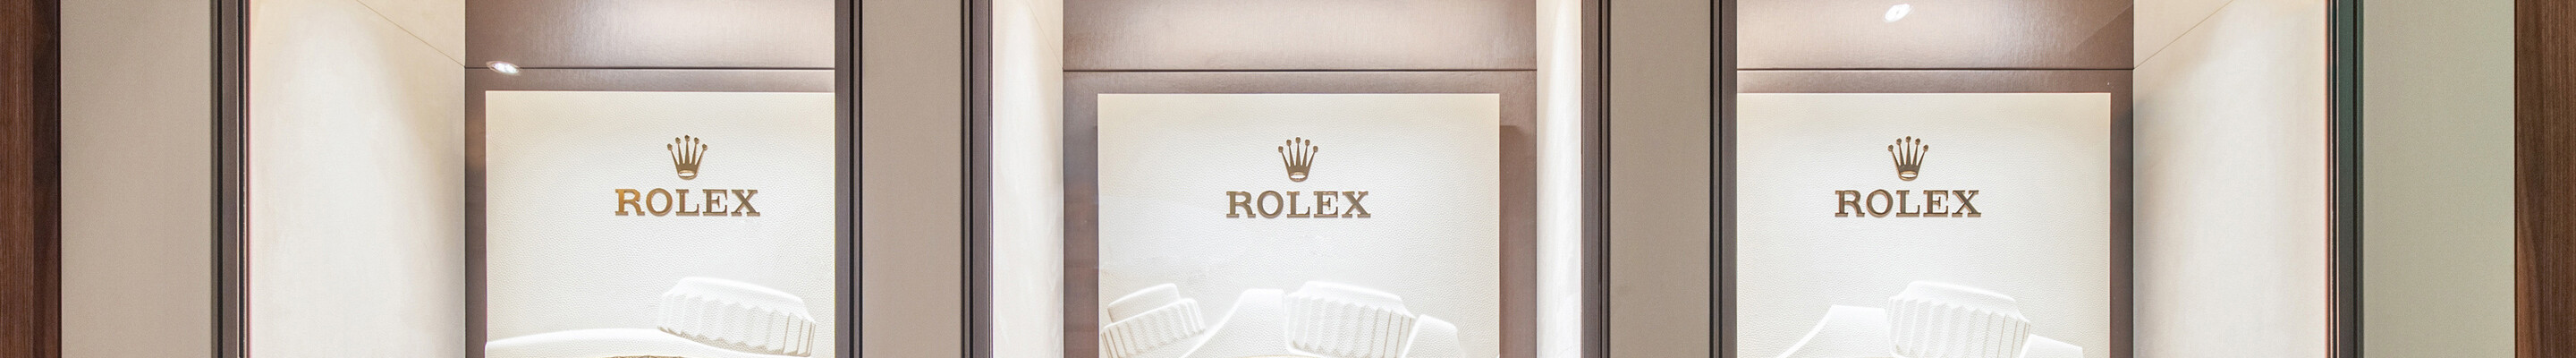 Rolex watches at Lassaussois in PARIS